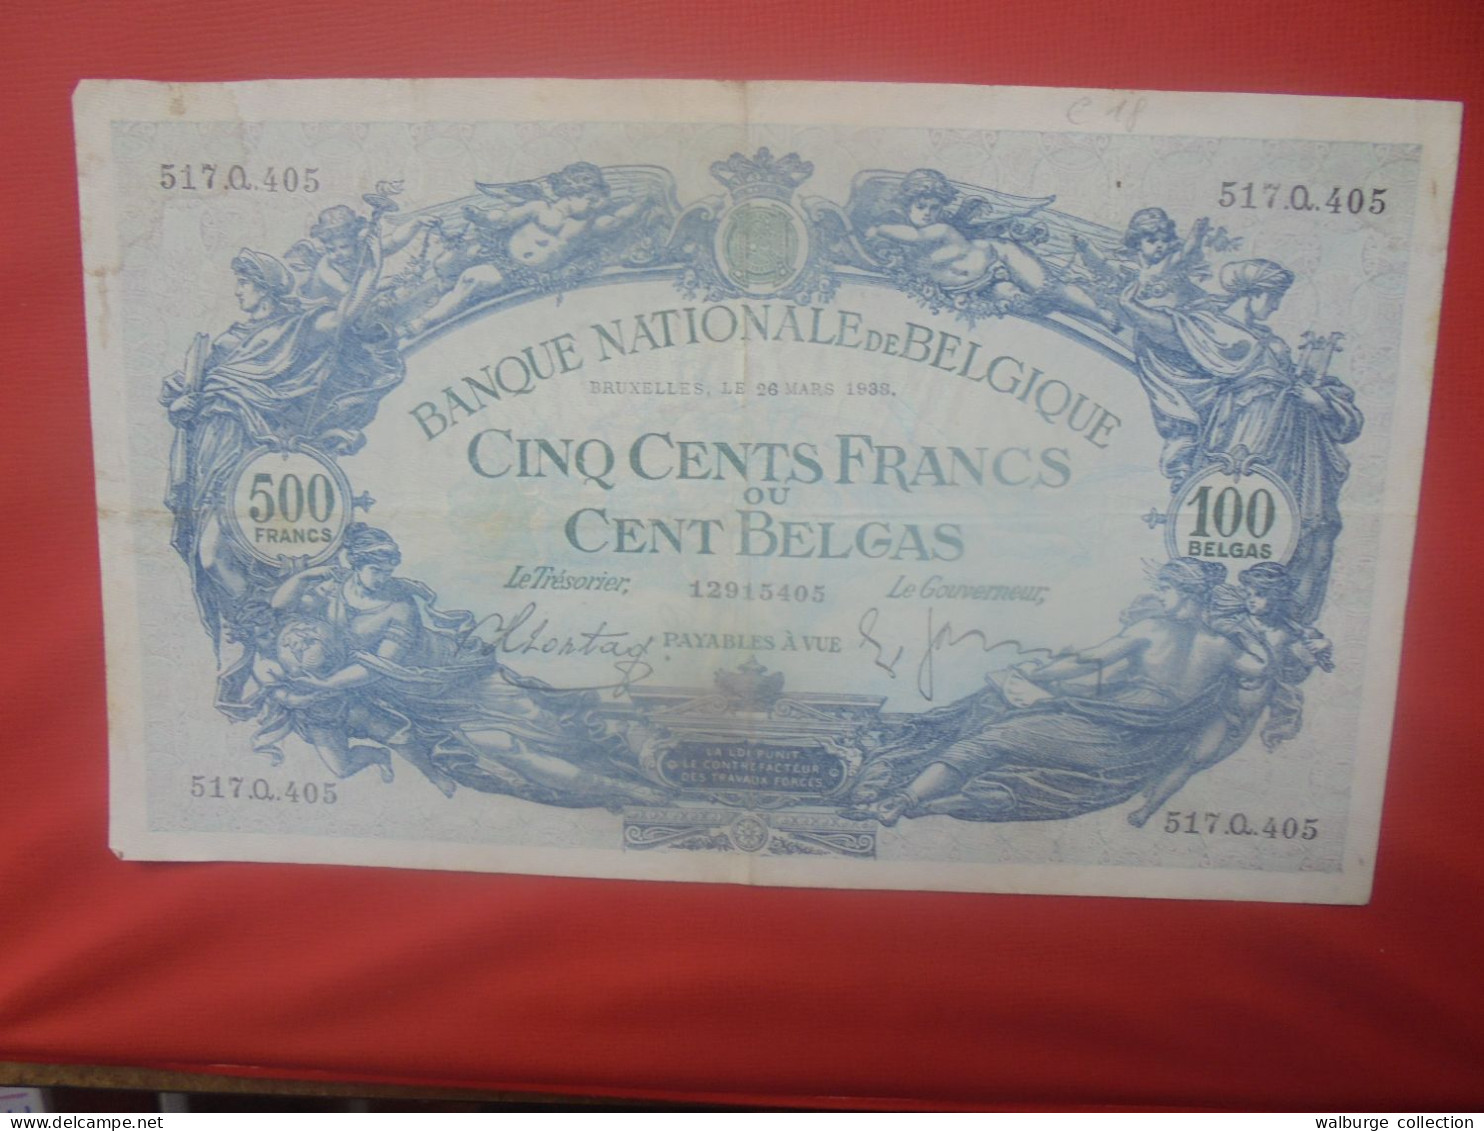 BELGIQUE 500 Francs 26-3-1938 Circuler (B.18) - 500 Francs-100 Belgas